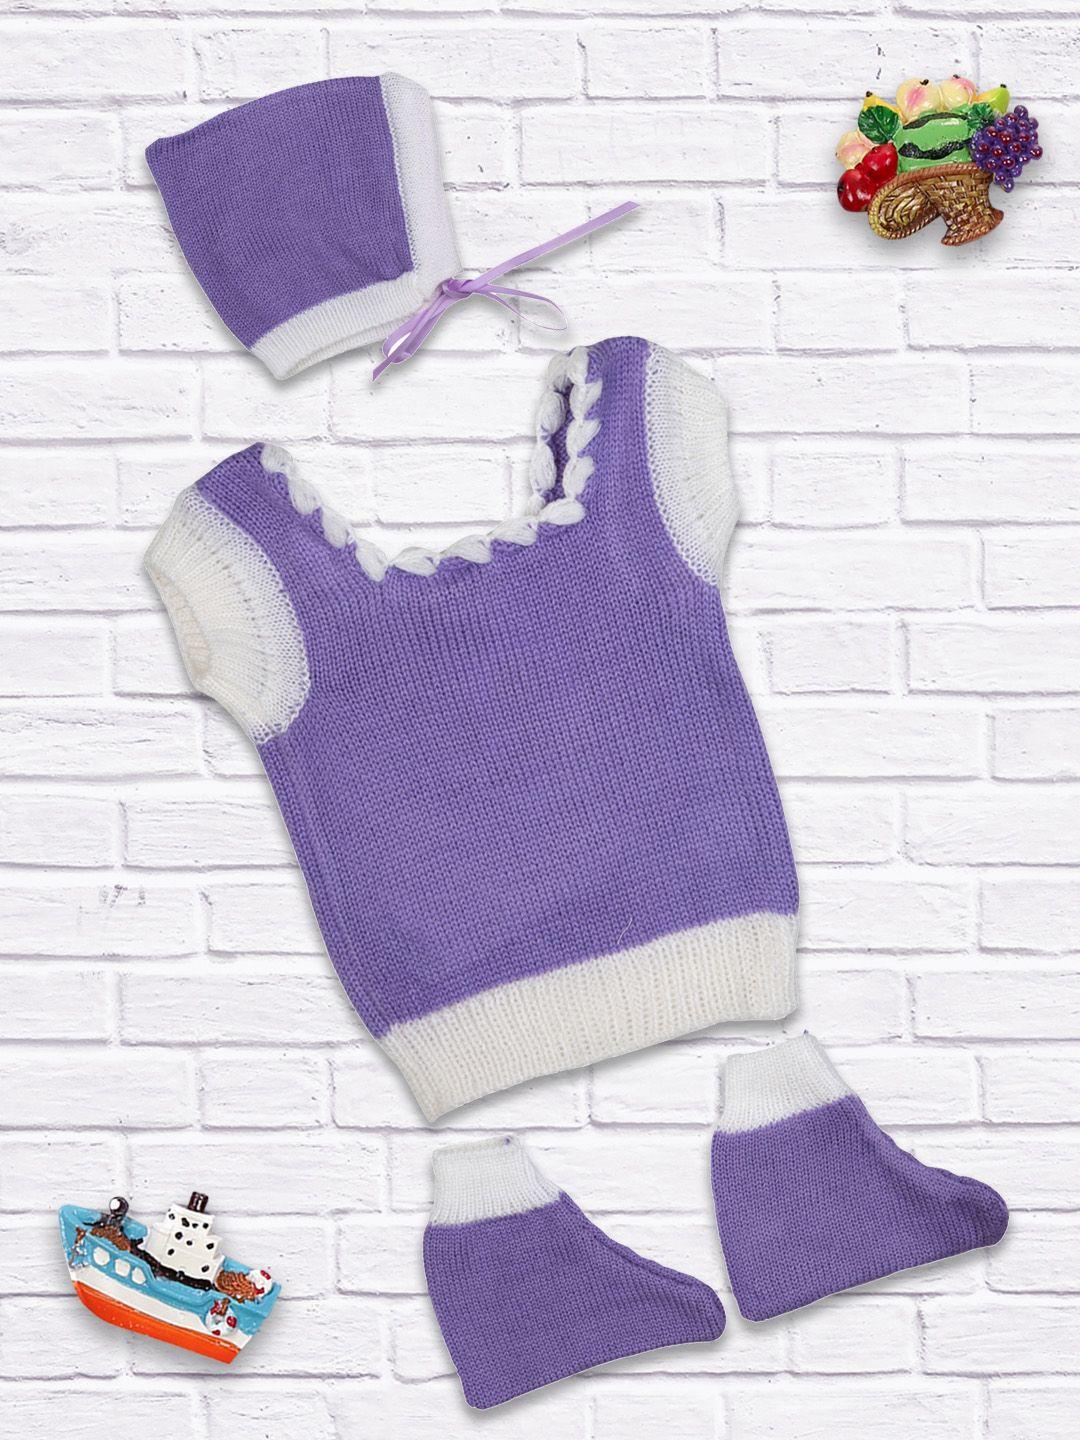 meemee-kids-lavender-solid-sweater-set